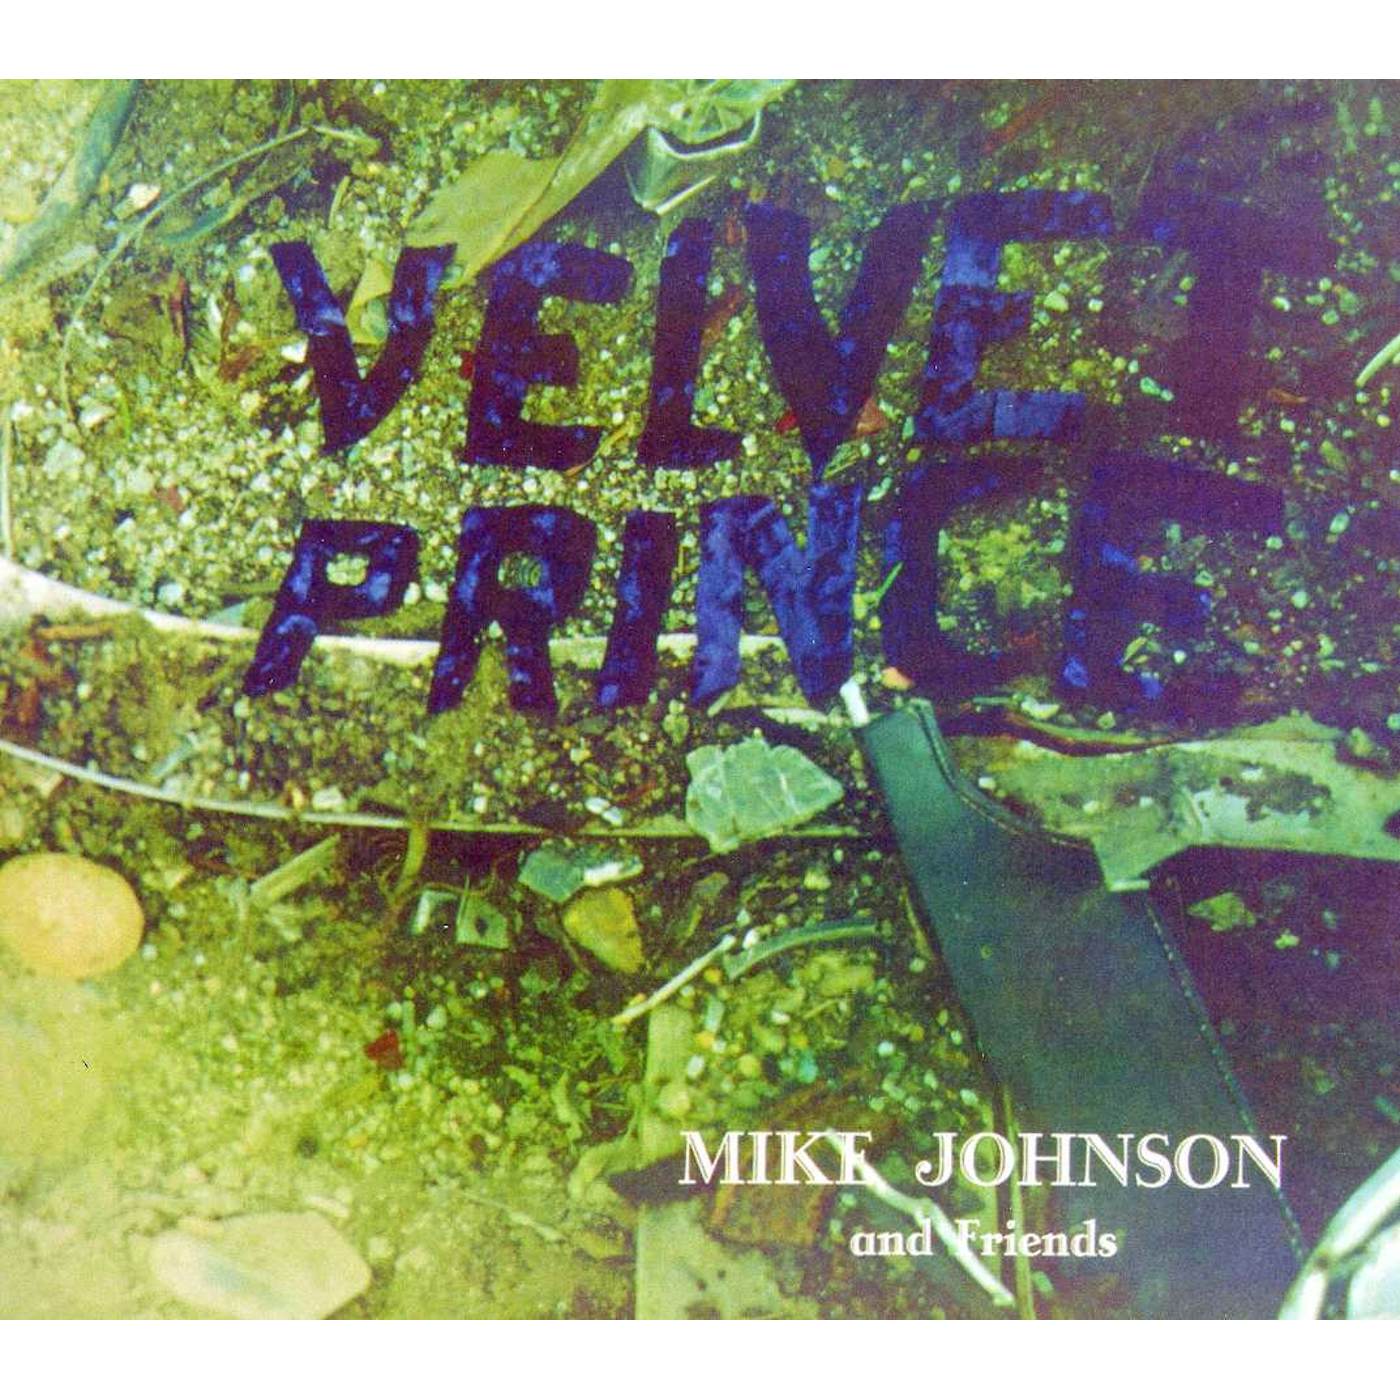 Mike Johnson VELVET PRINCE: LEGENDS REMASTERED 4 CD